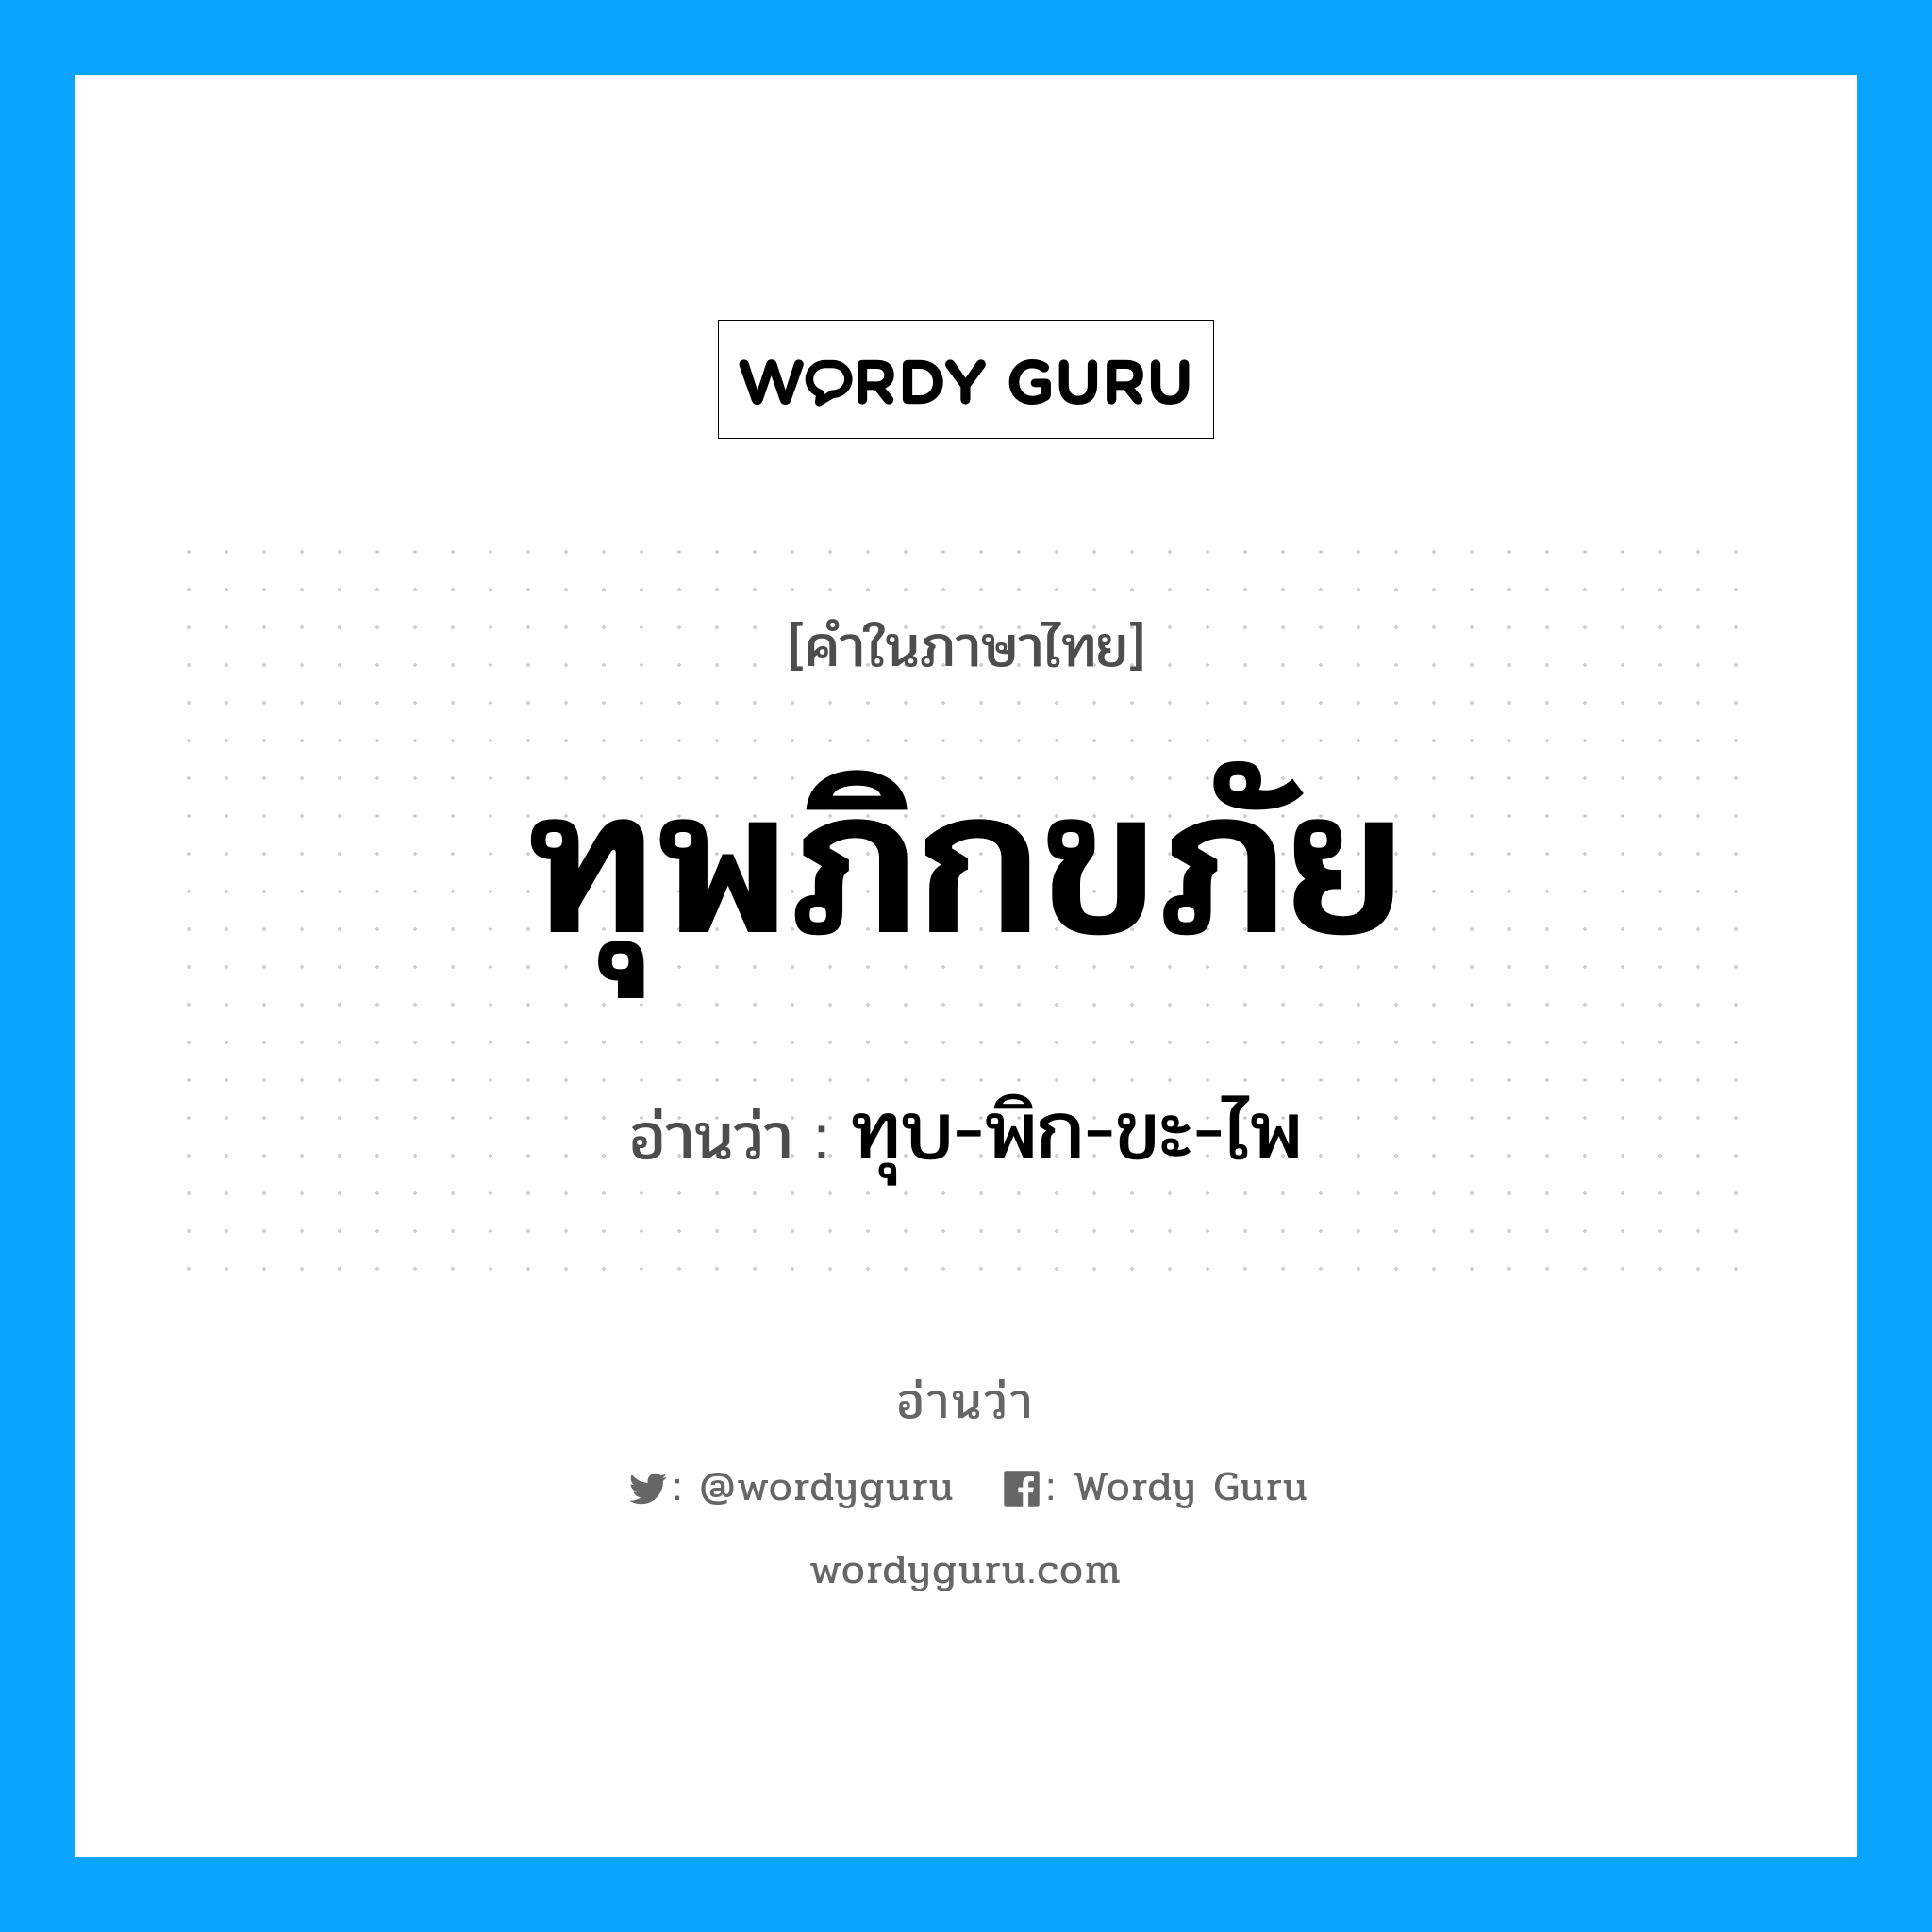 ทุบ-พิก-ขะ-ไพ เป็นคำอ่านของคำไหน?, คำในภาษาไทย ทุบ-พิก-ขะ-ไพ อ่านว่า ทุพภิกขภัย